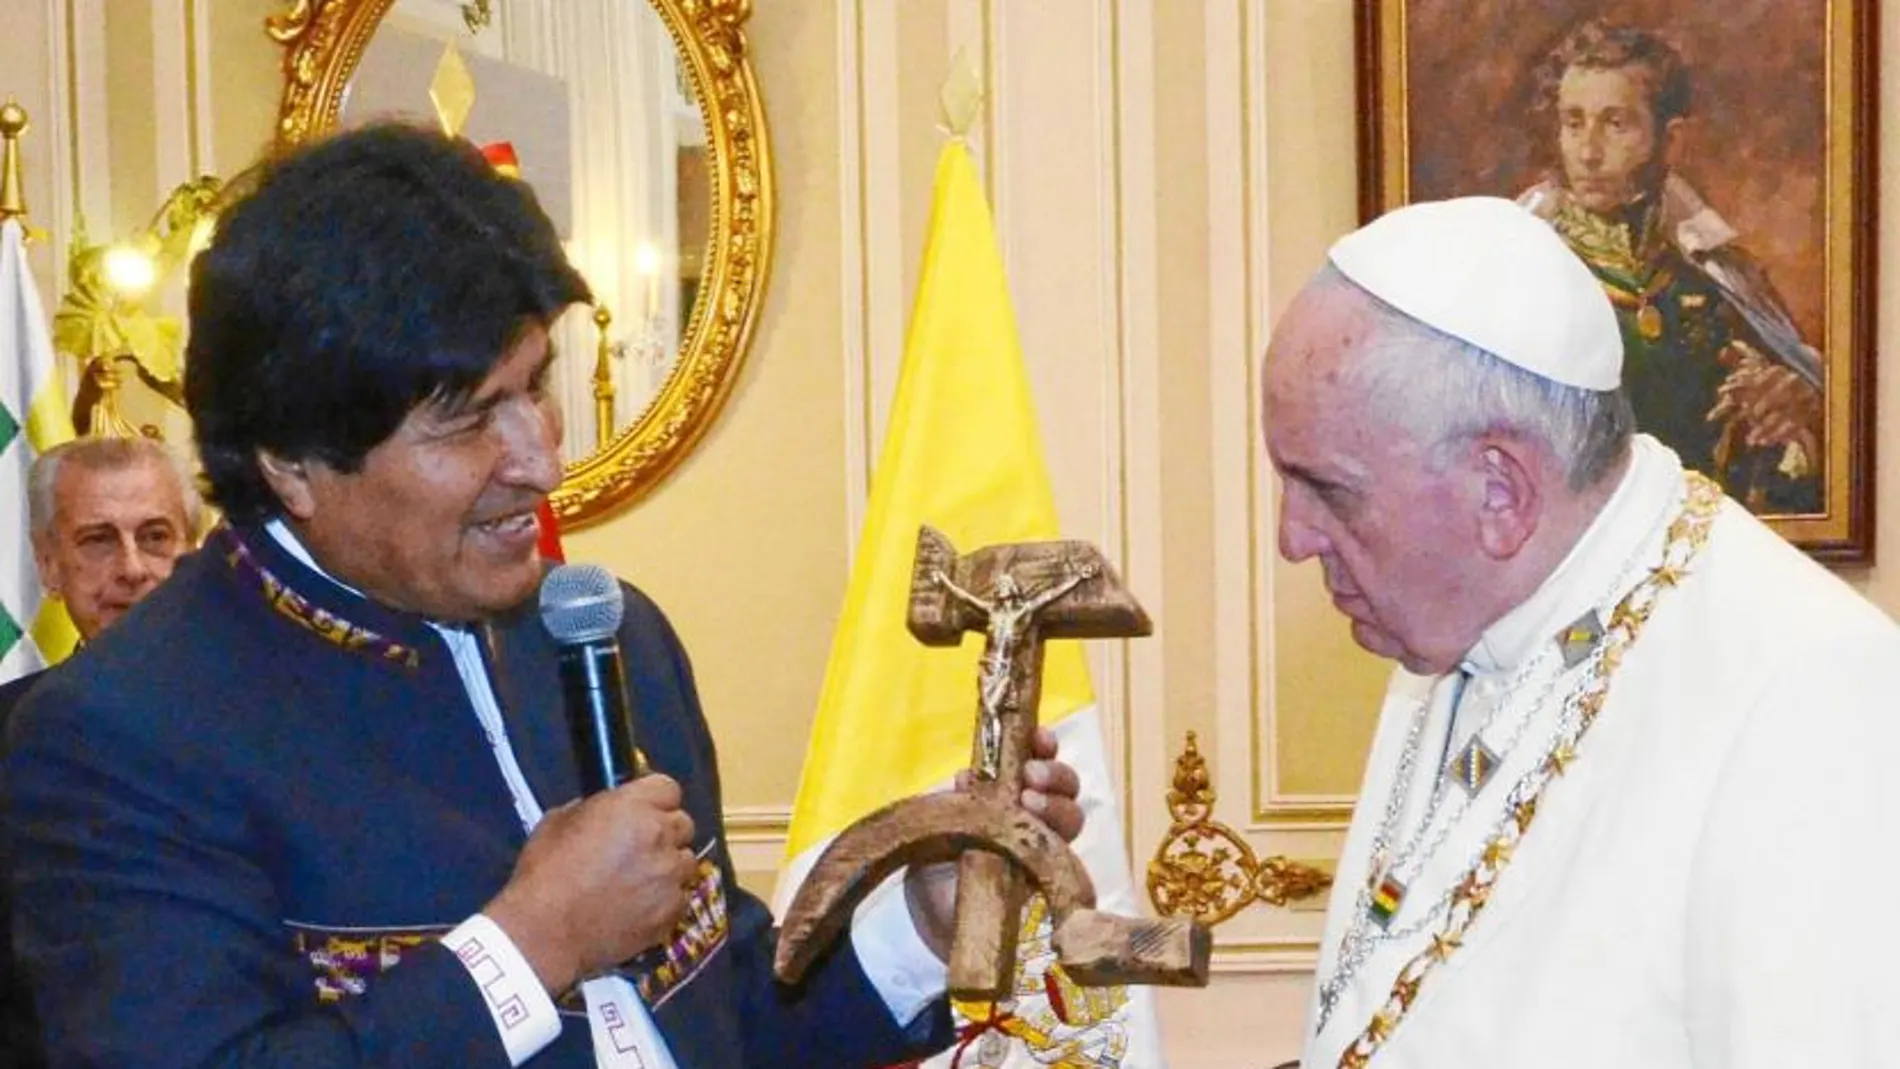 Al Papa Francisco no le molestó que Evo Morales le regalara tras su entrevista en el palacio presidencial de La Paz una hoz y un martillo tallados en madera con un crucifijo incorporado.